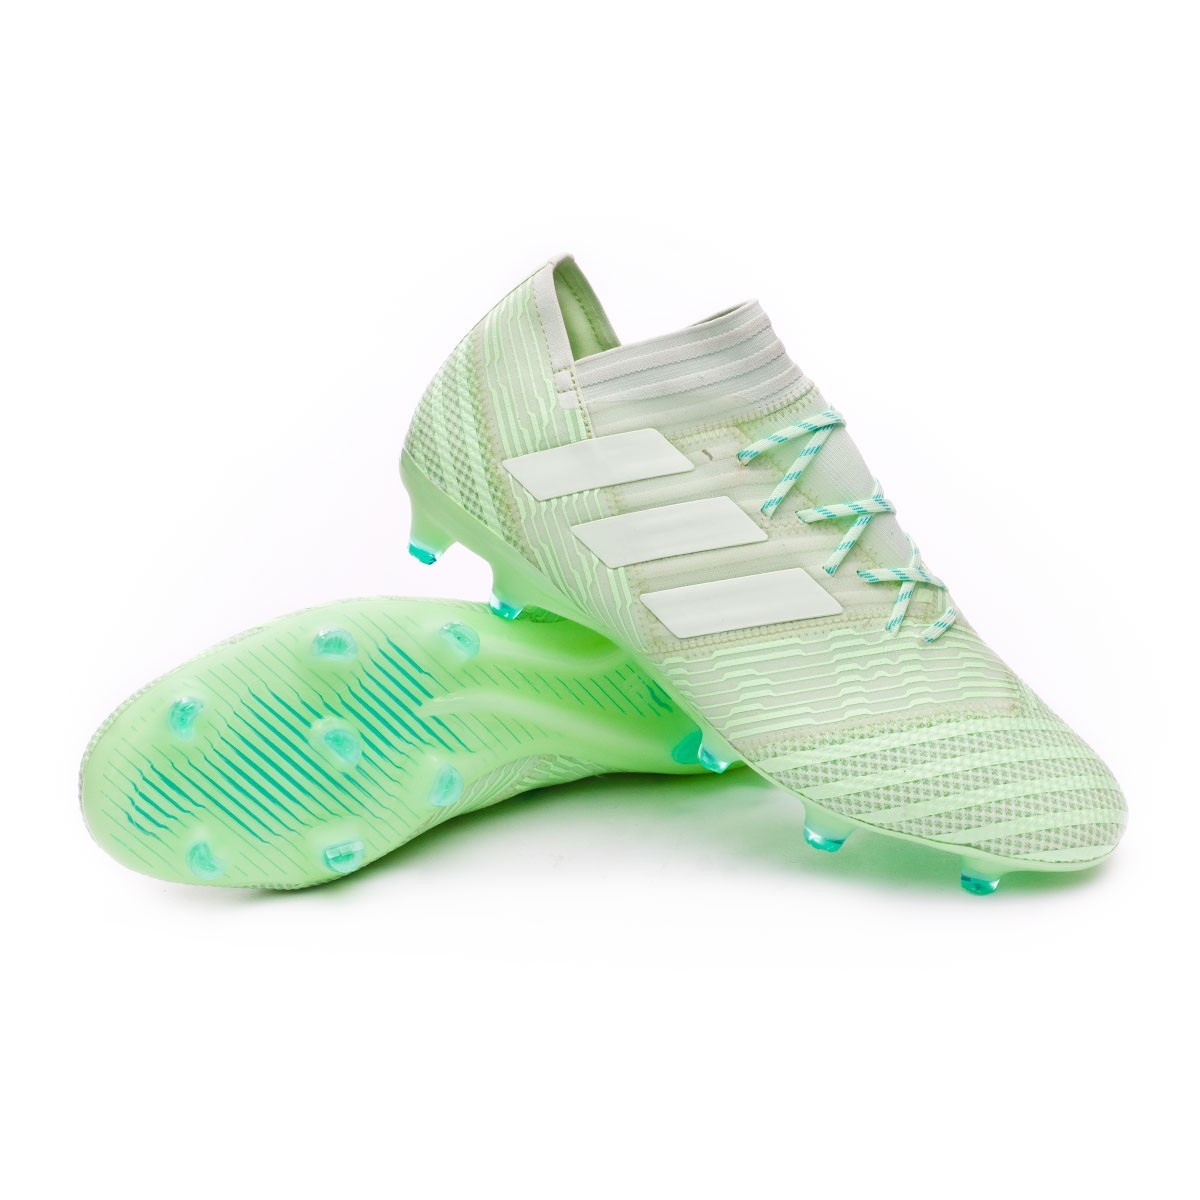 Football Boots adidas Nemeziz 17.1 FG 